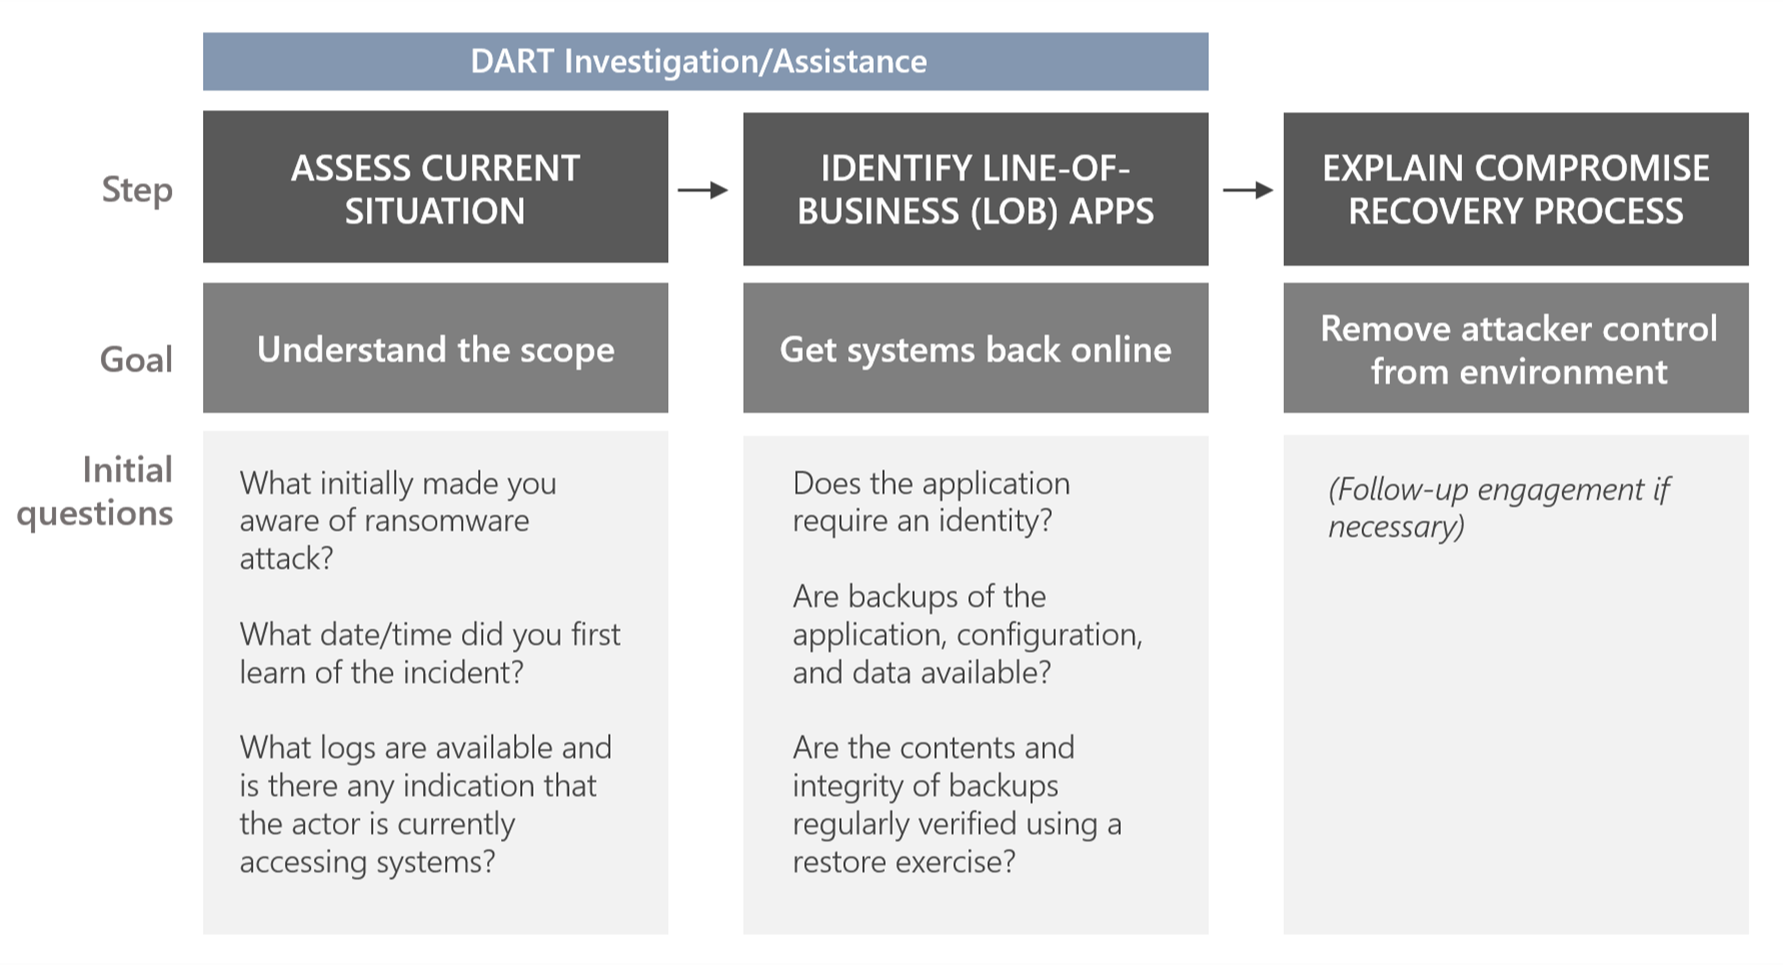 図は、DART のランサムウェア調査支援における手順、目標、および最初の質問を示しています。